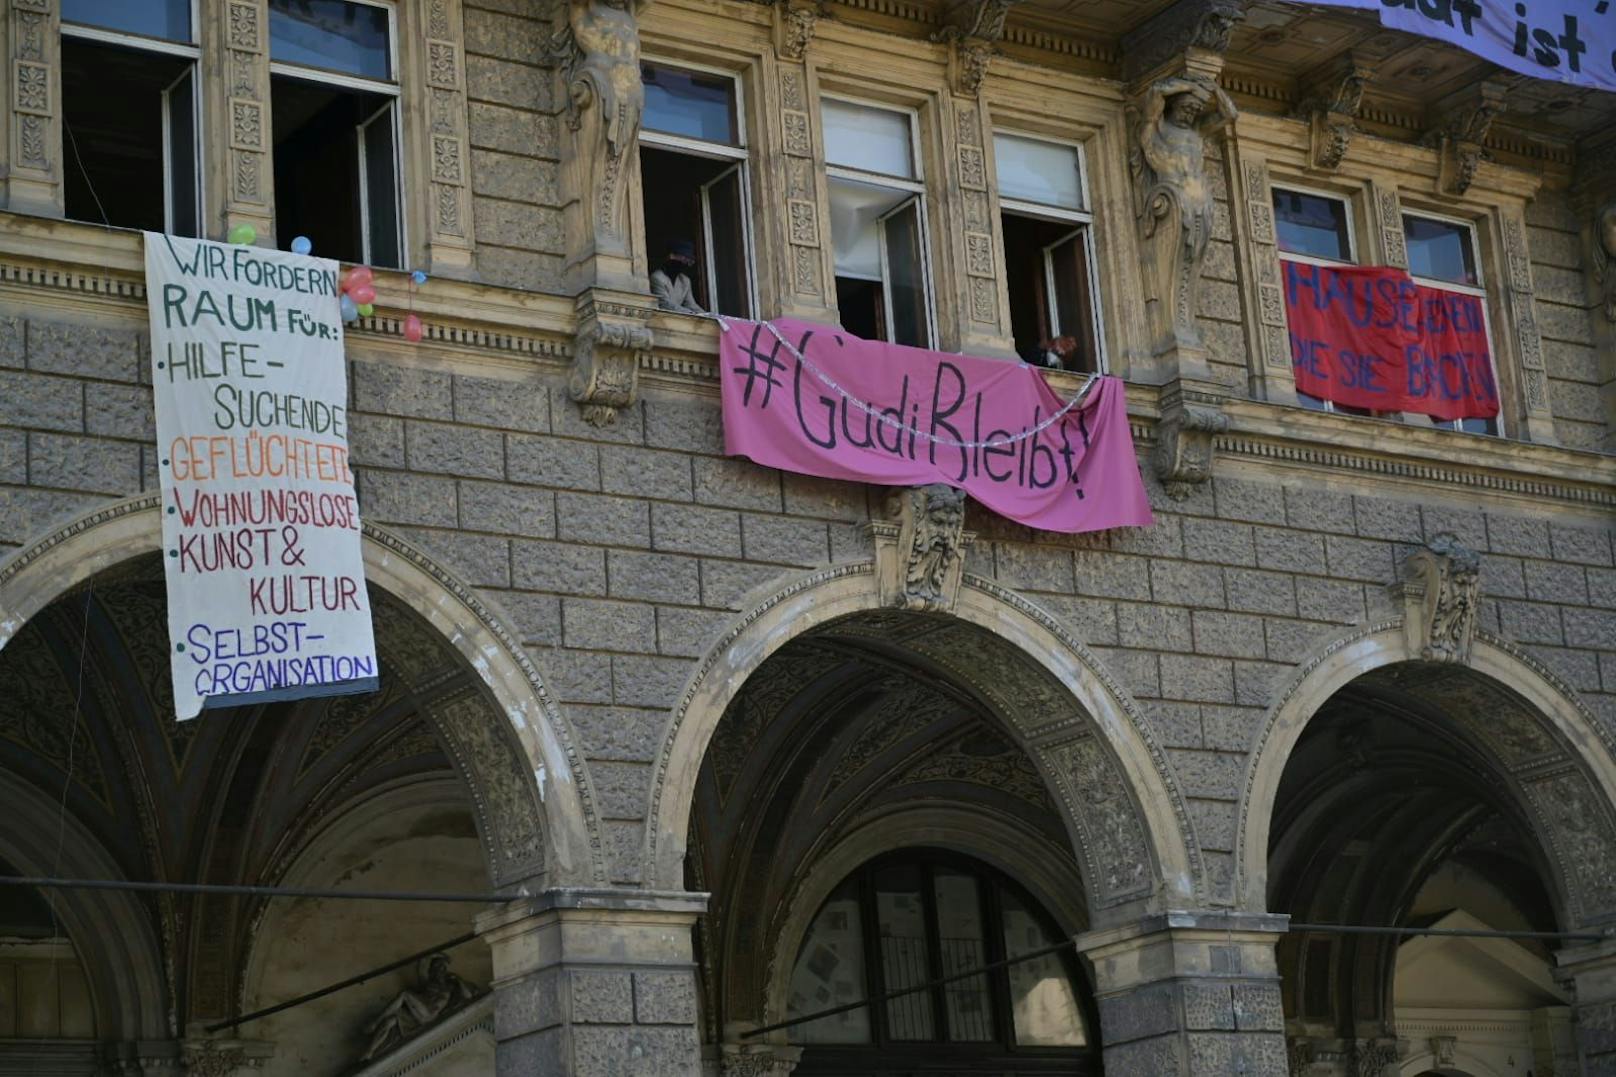 Nach der Besetzung brachten die Aktivisten an den Fenstern und Balkonen des Hauses Banner mit Aufschriften wie "Ob geflüchtet oder wohnungslos, wir haben Platz, die Stadt ist groß" an.